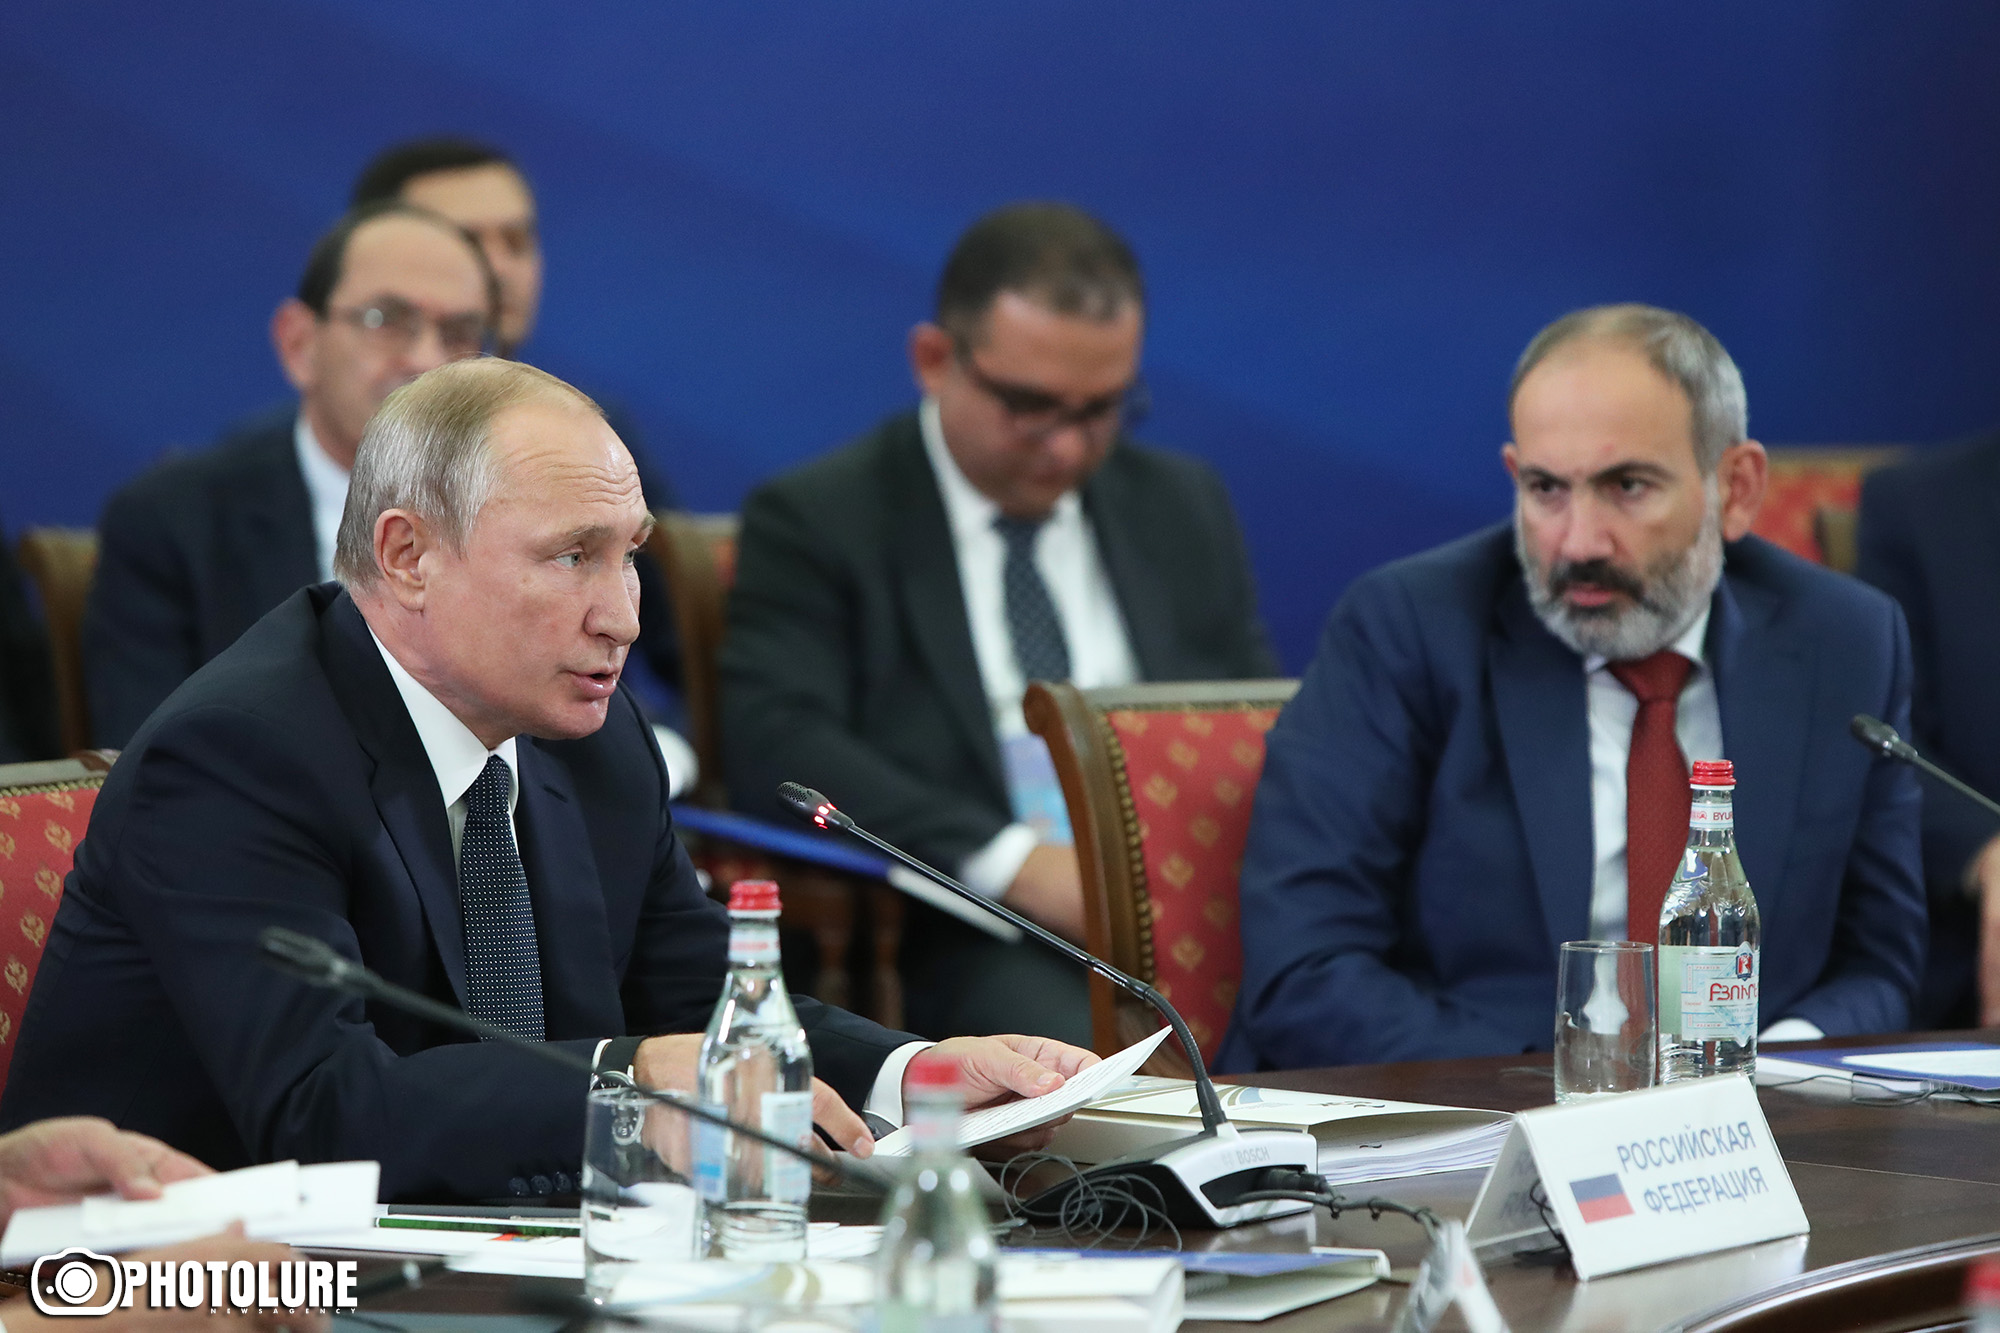 В ЕАЭС формируется общий финансовый рынок - Путин